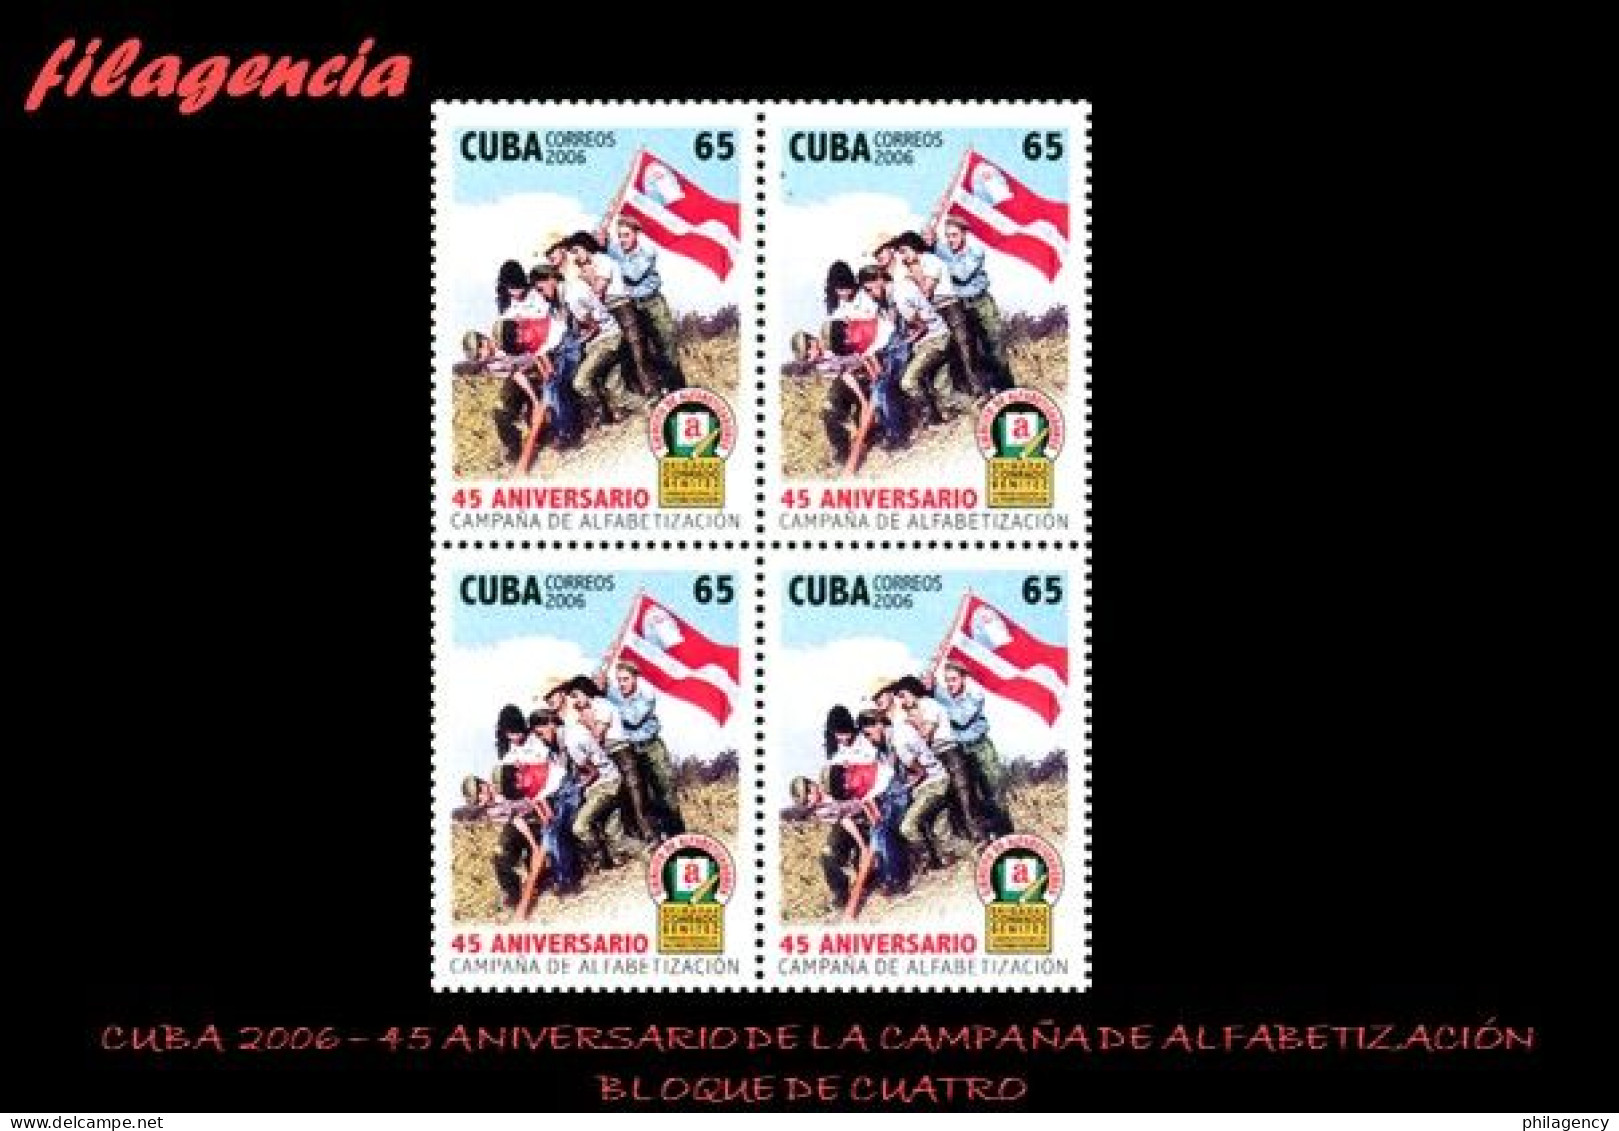 CUBA. BLOQUES DE CUATRO. 2006-37 45 ANIVERSARIO DE LA CAMPAÑA DE ALFABETIZACIÓN - Nuovi